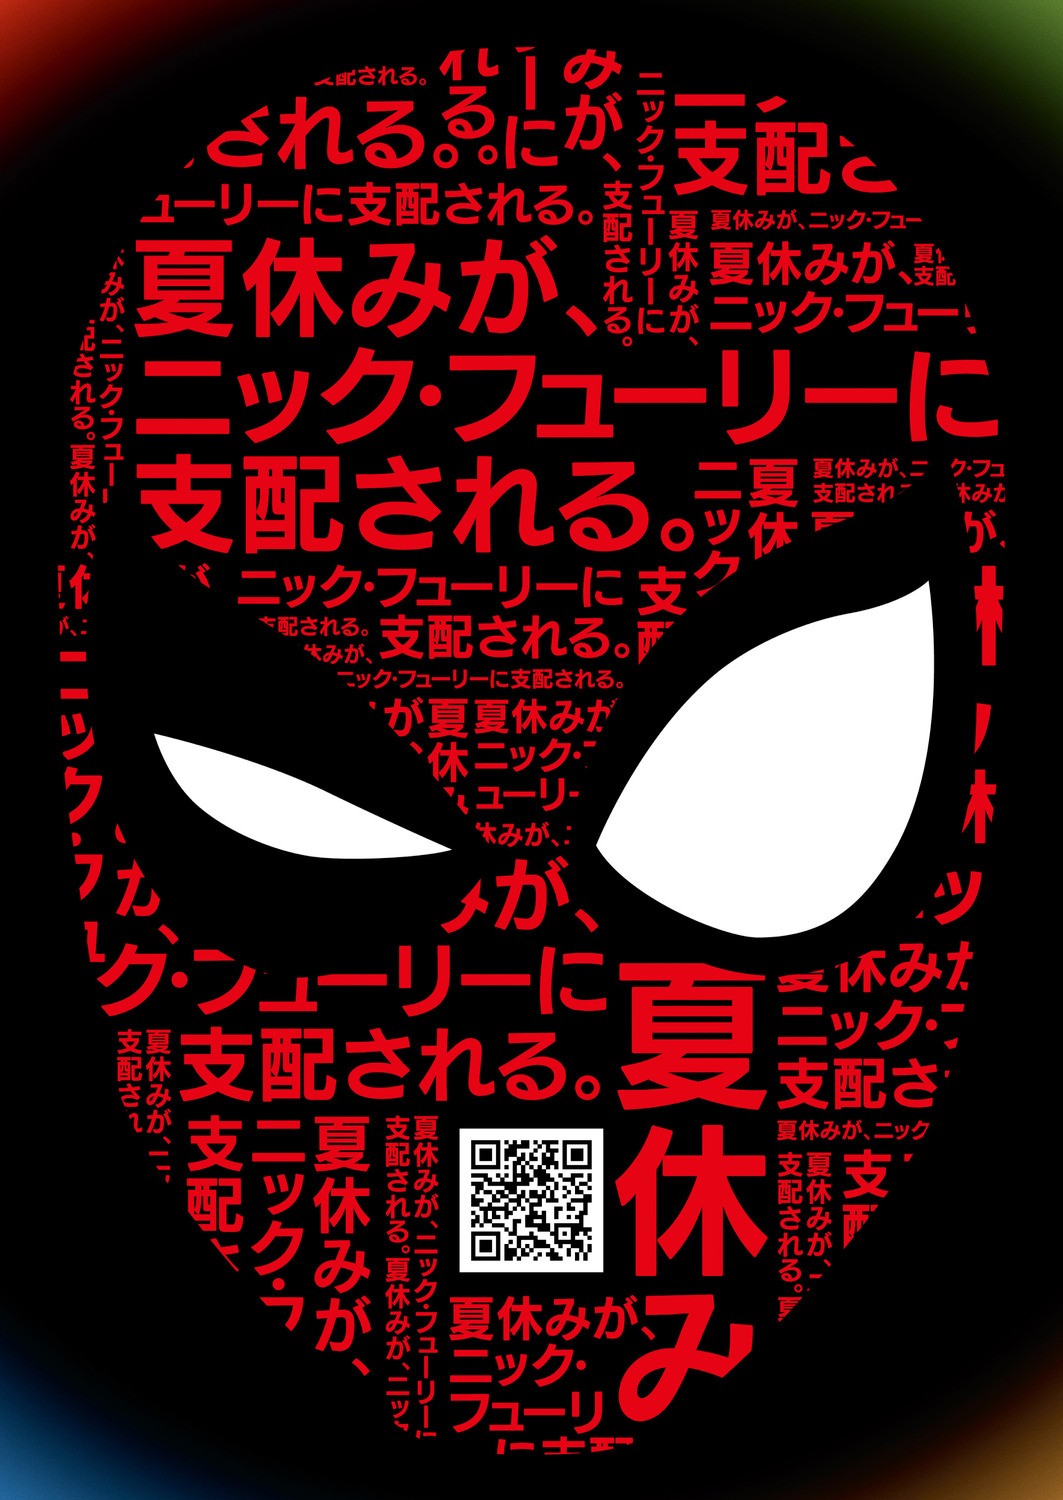 Человек-паук: Вдали от дома: постер N155017